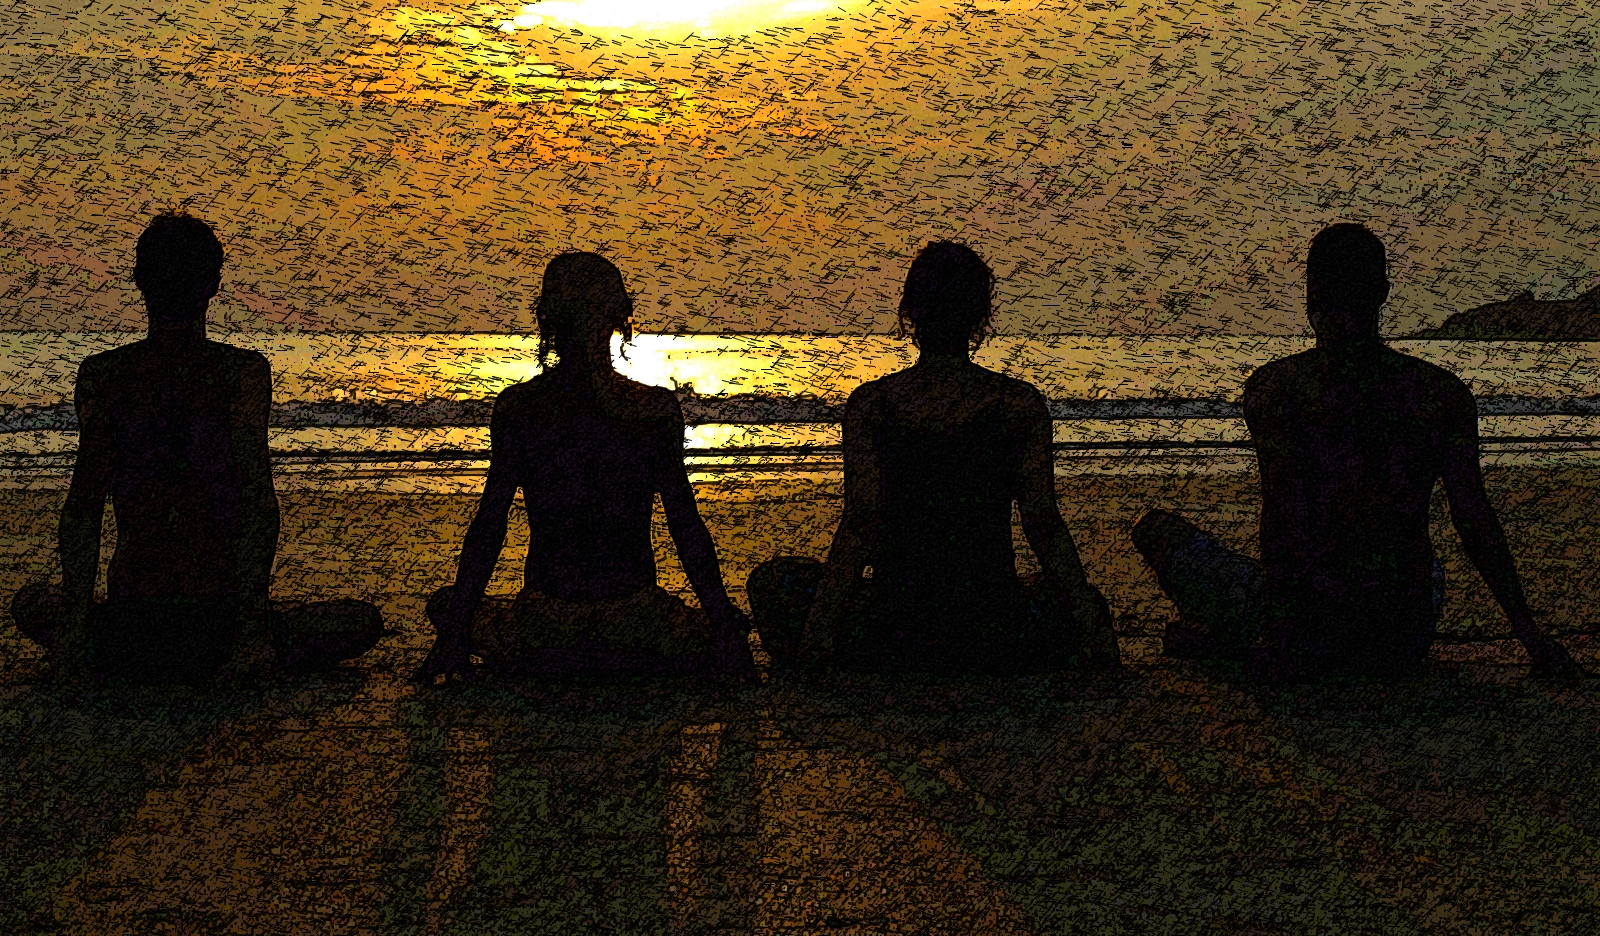 ¡Cuidado! las Posturas y Meditación del Yoga abren Puertas a Energías Peligrosas